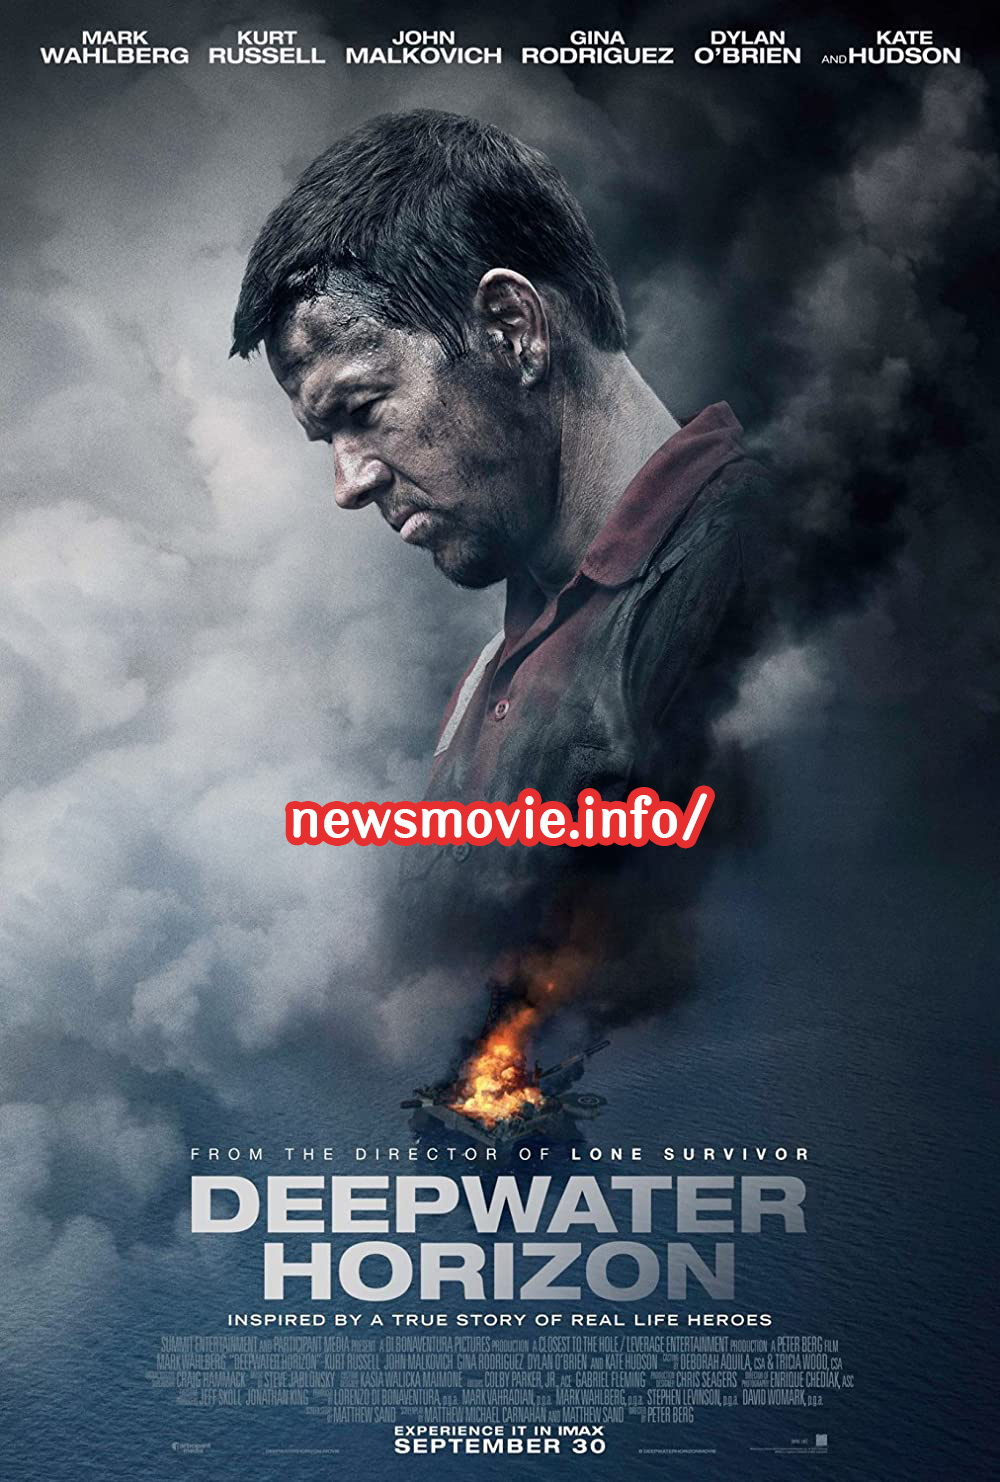 Deepwater horizon (2016) ฝ่าวิบัติเพลิงนรก รีวิวหนัง